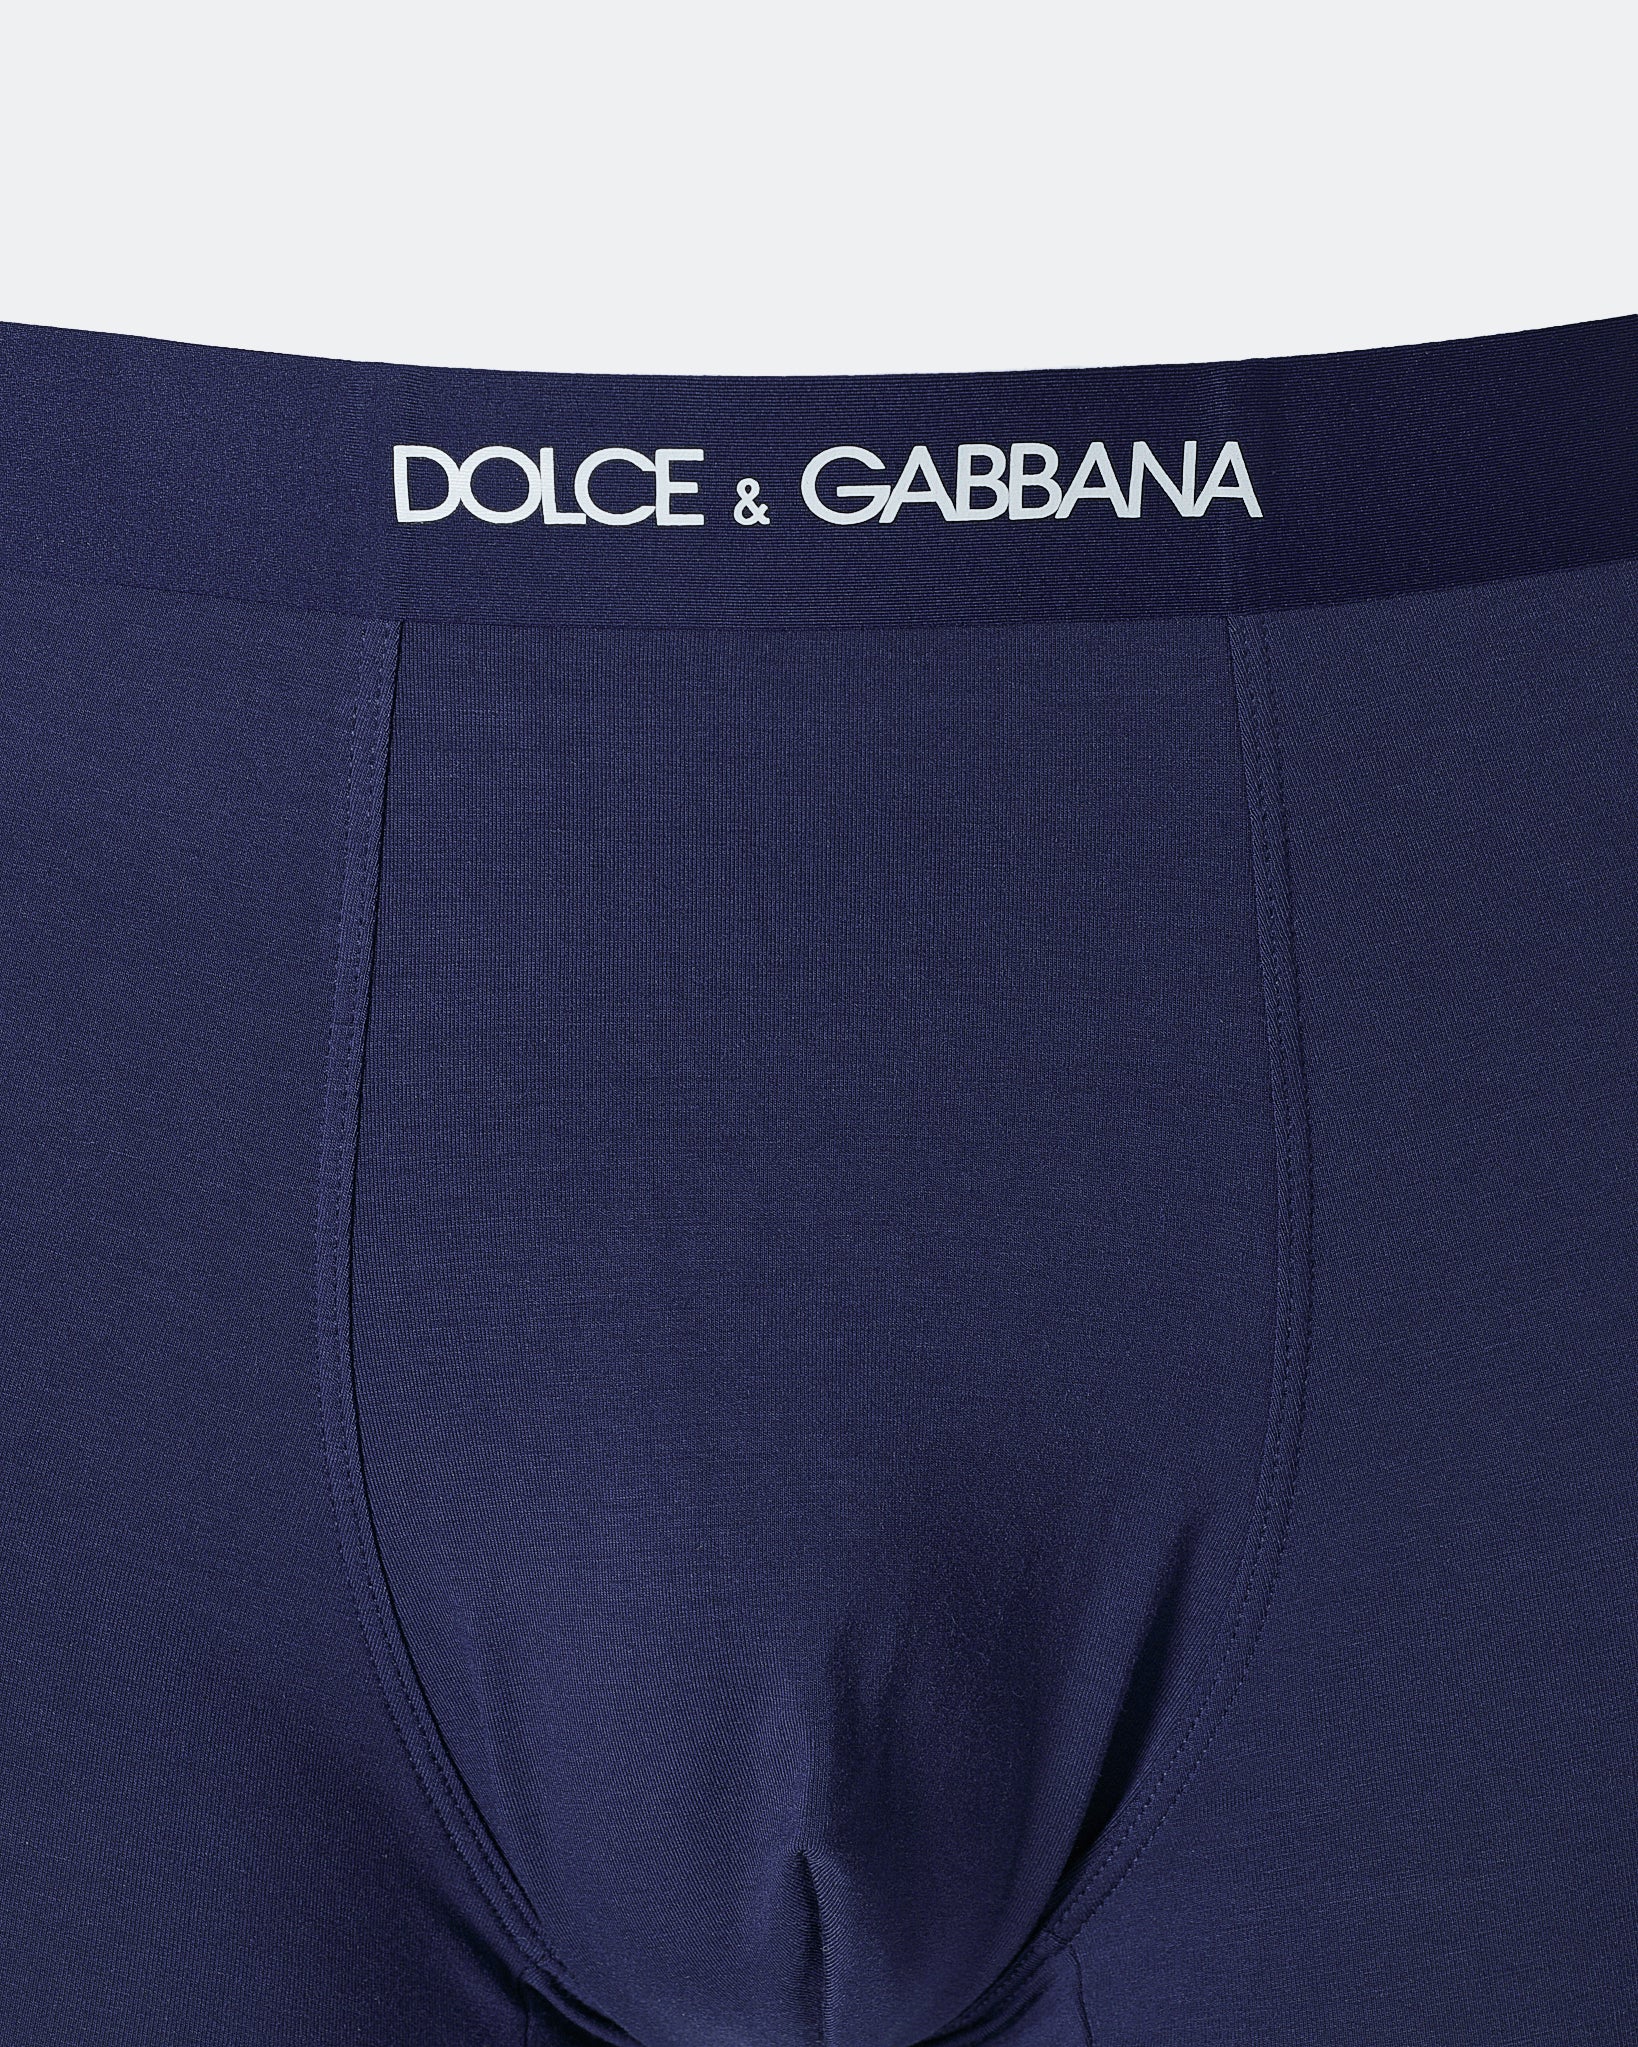 DG Light Weight Men Blue Underwear 6.90